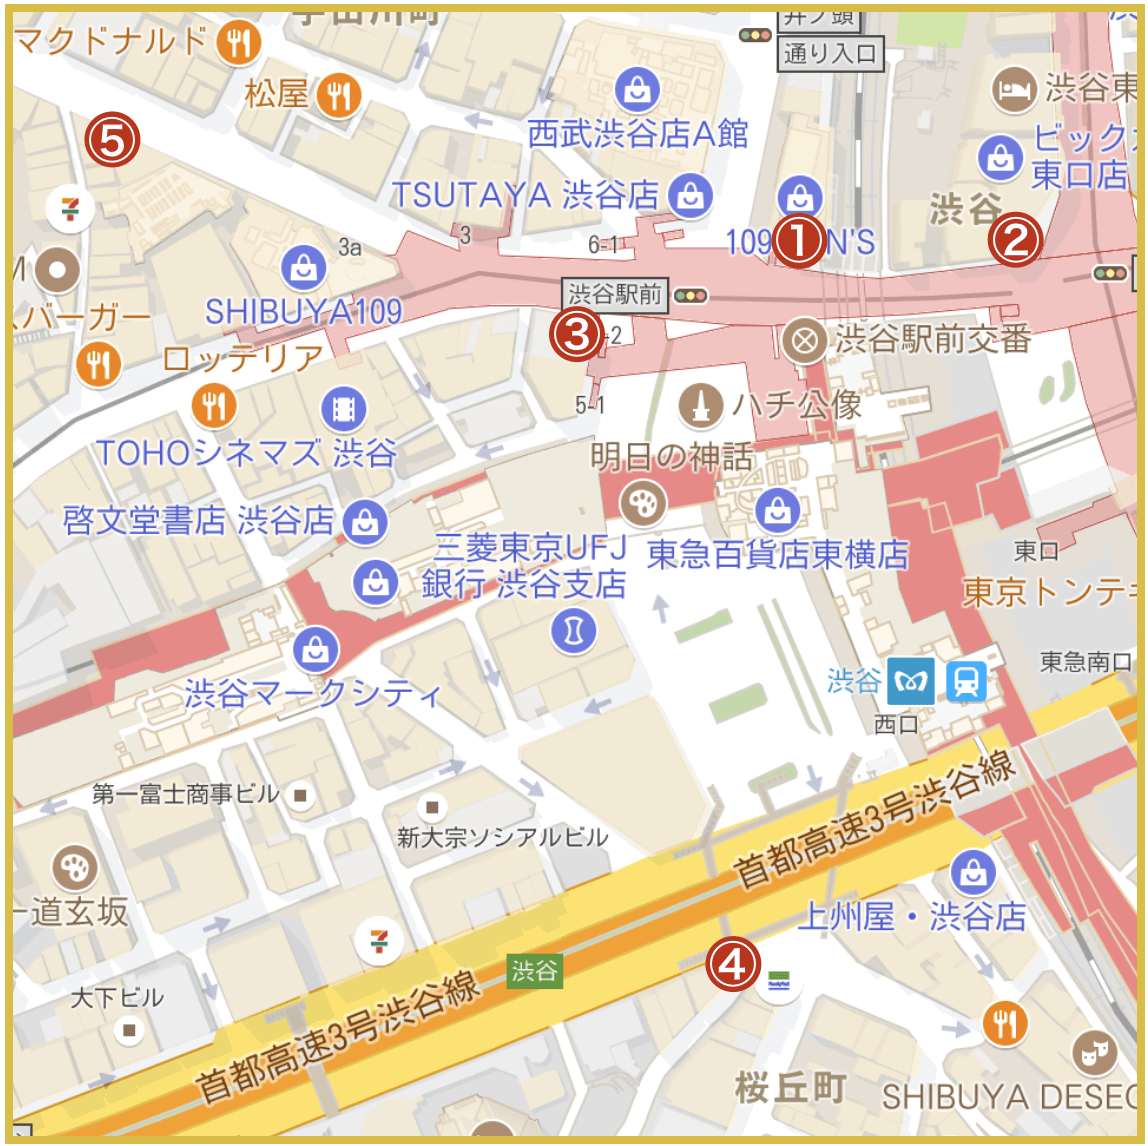 渋谷駅周辺にあるアコム店舗・ATMの位置